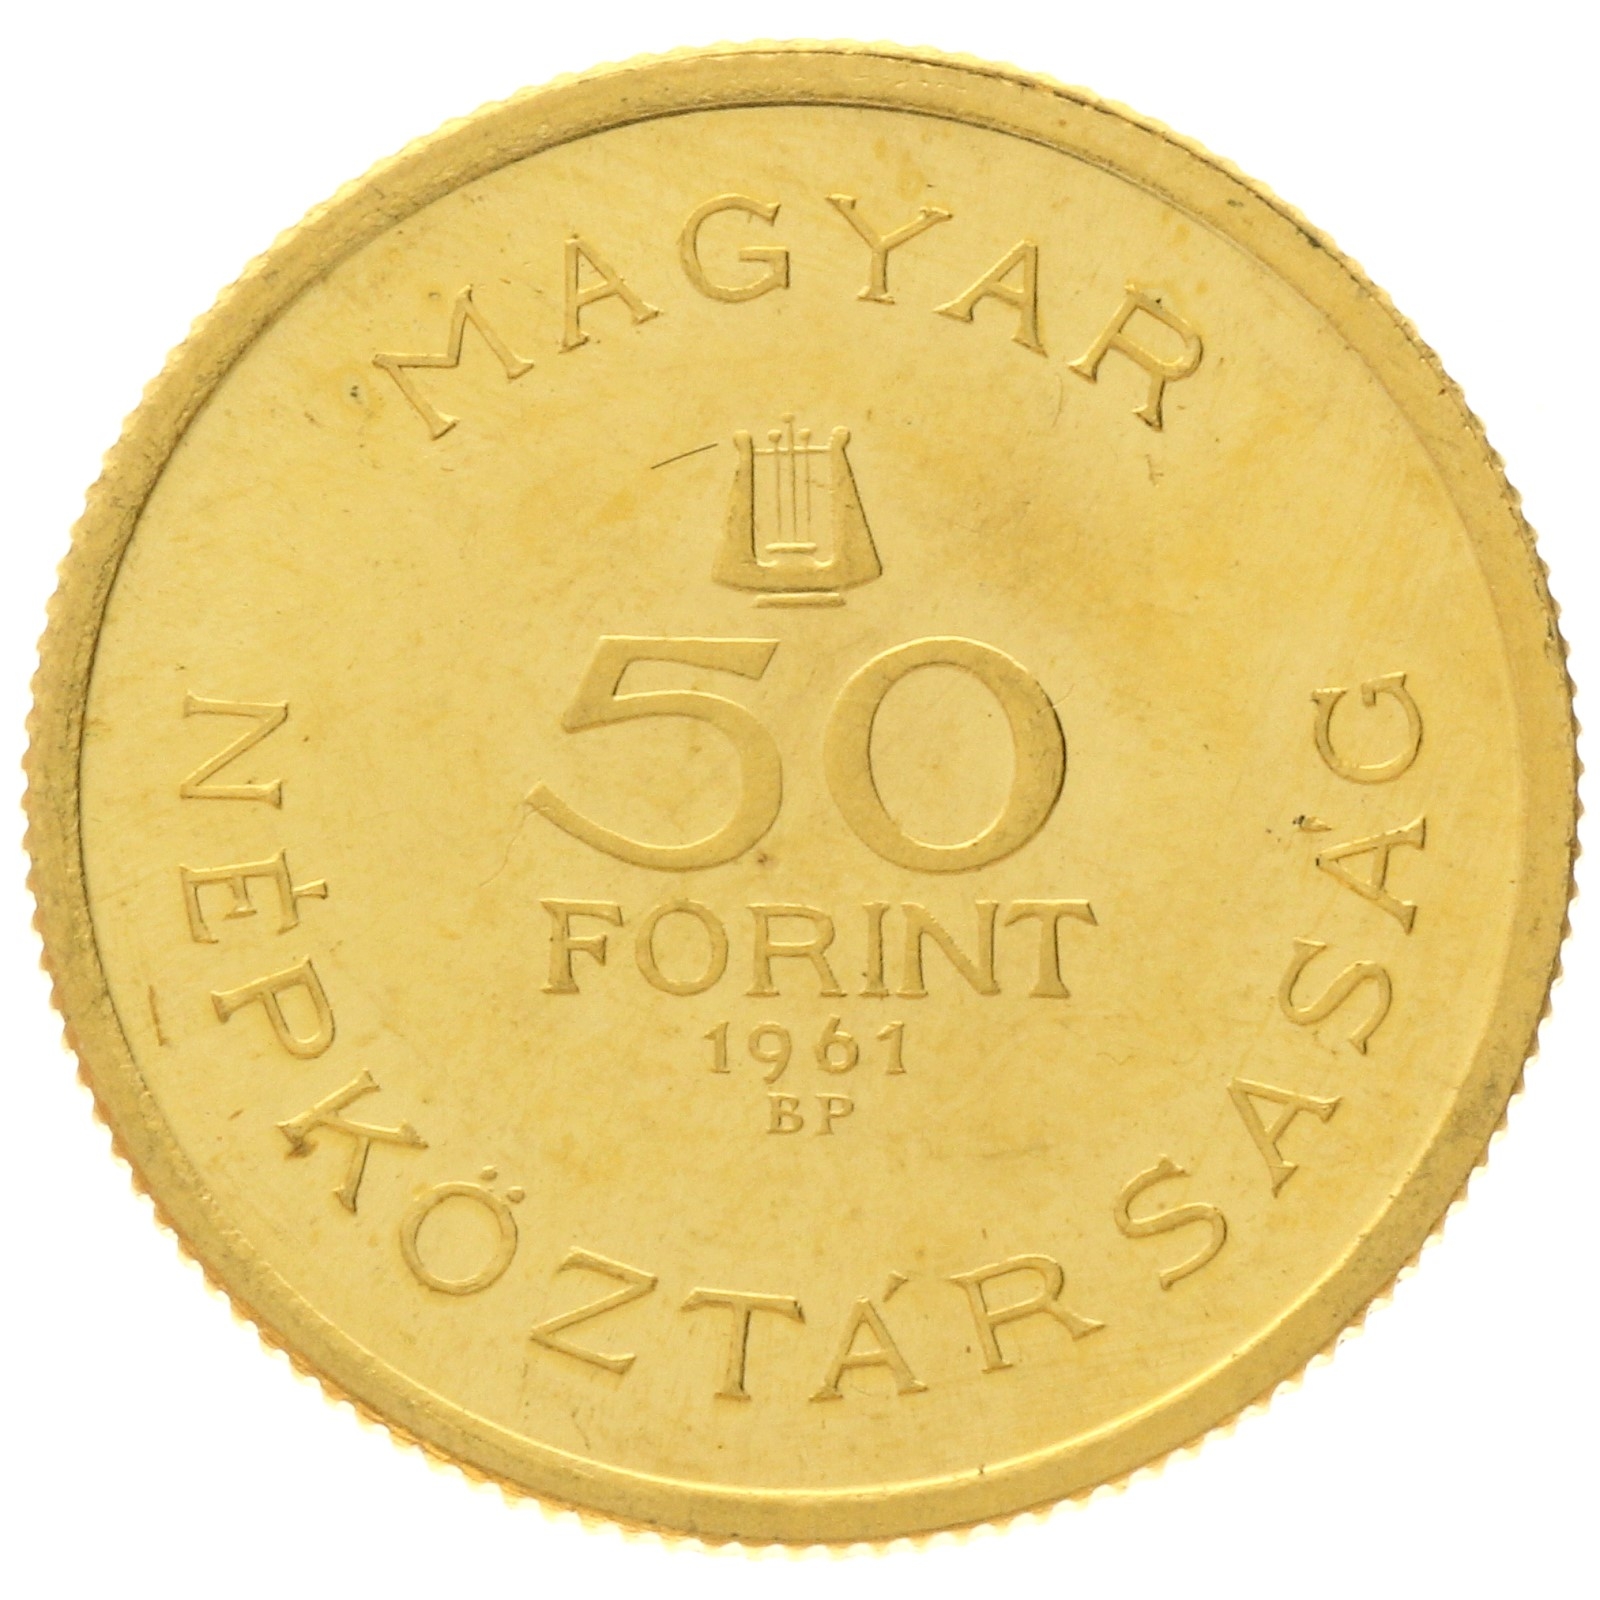 Hungary - 50 forint - 1961 - Birth of Bartok